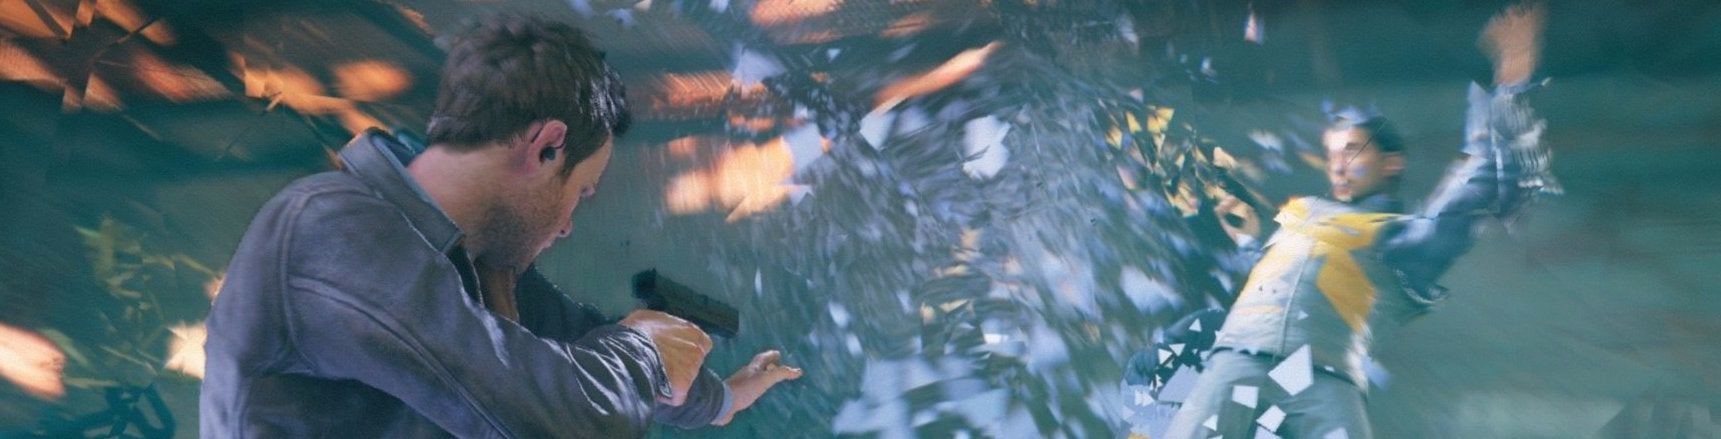 Immagine di I difetti visivi minano l'incredibile aggiornamento di Quantum Break su Xbox One X - analisi tecnica